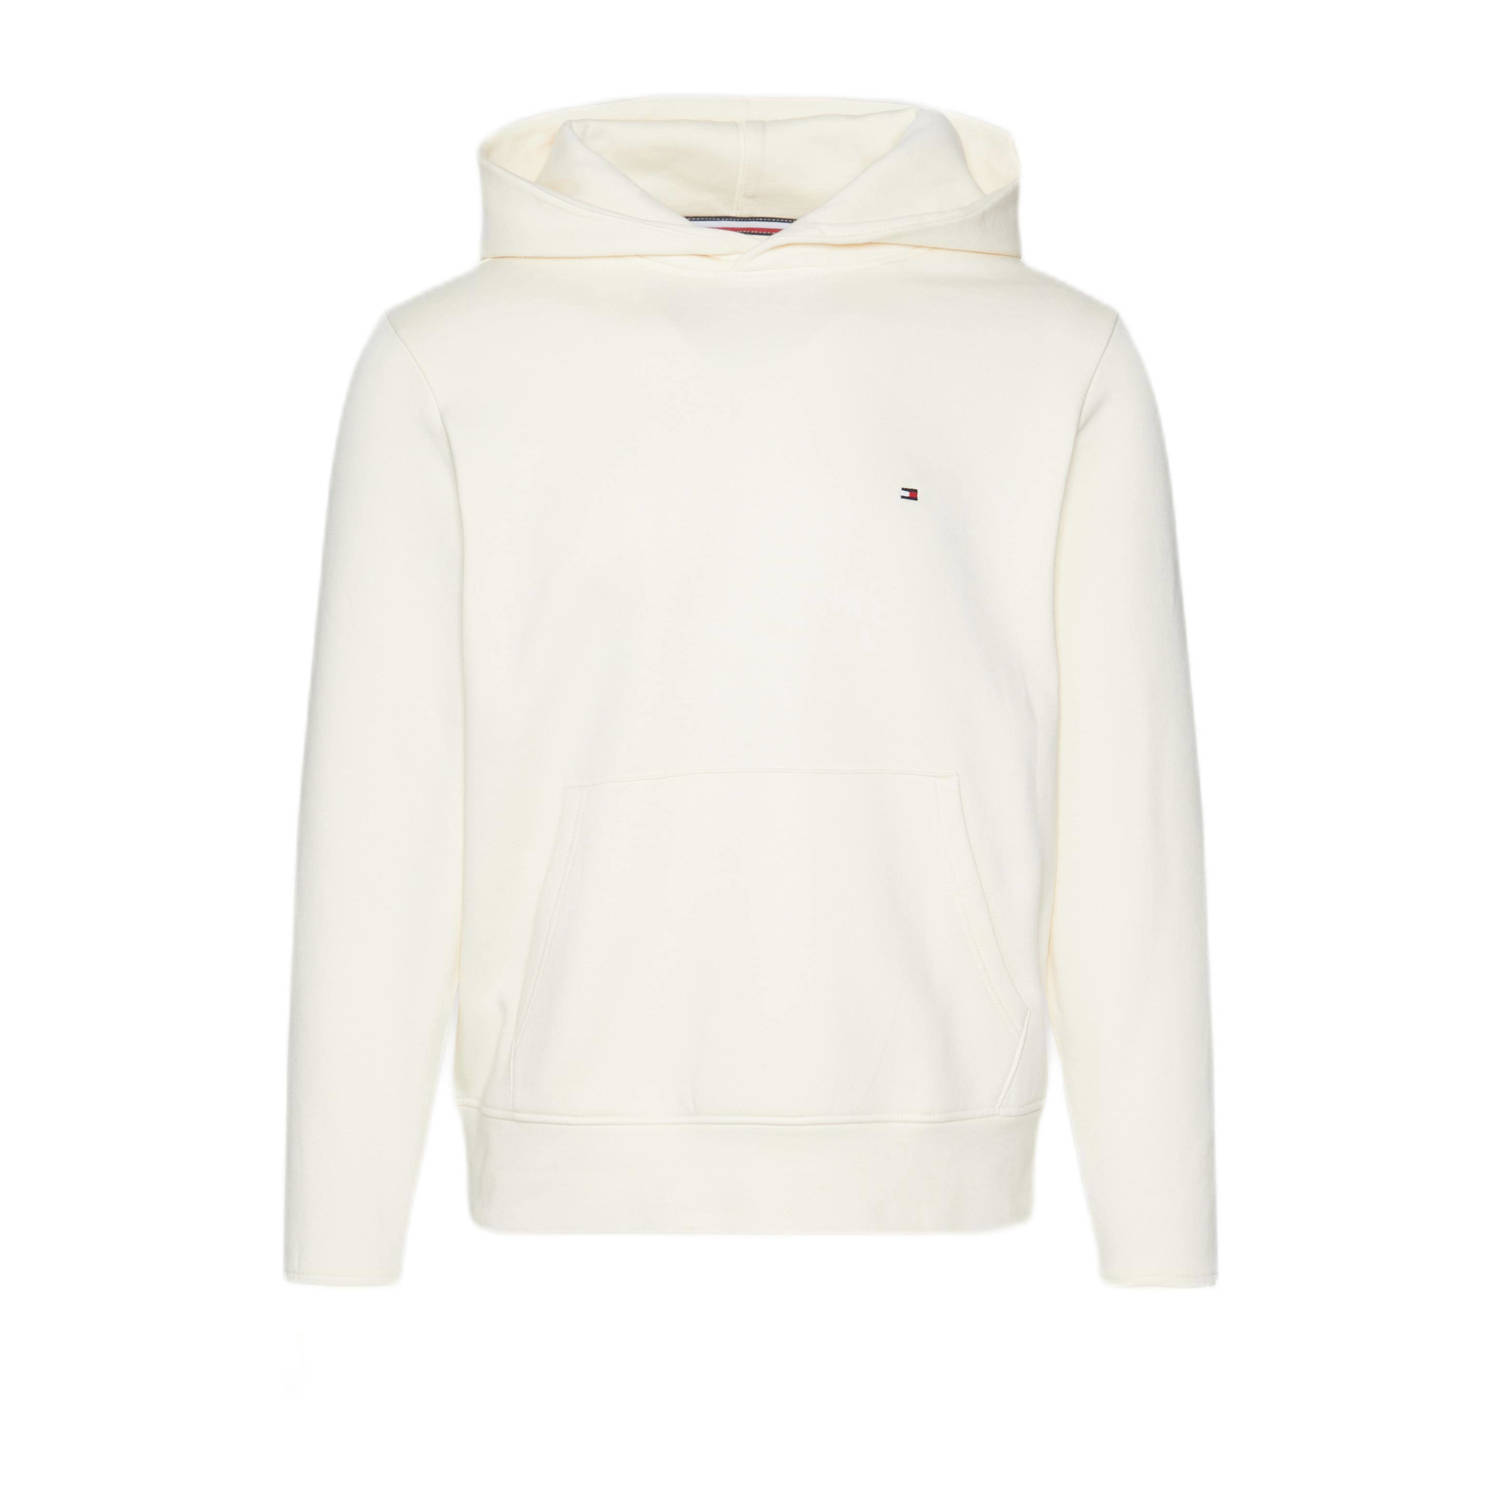 Tommy Hilfiger hoodie met logo calico